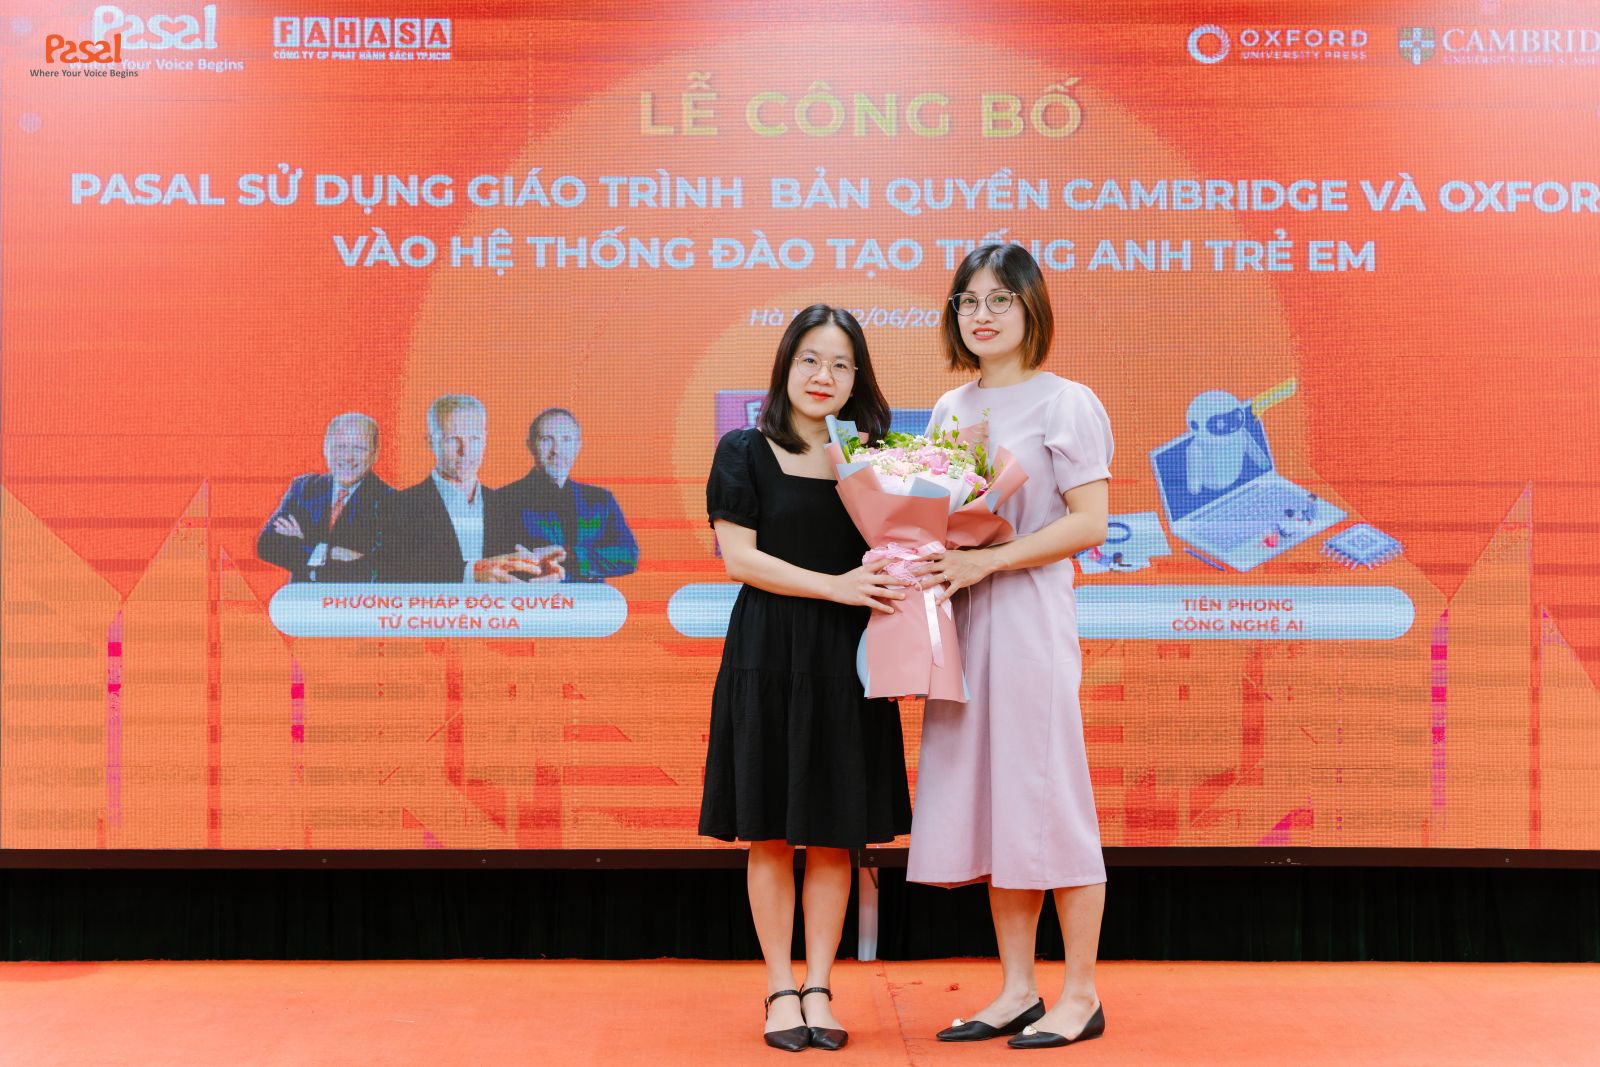 Bà Đỗ Huyền Linh, đại diện NXB Oxford tại Việt Nam